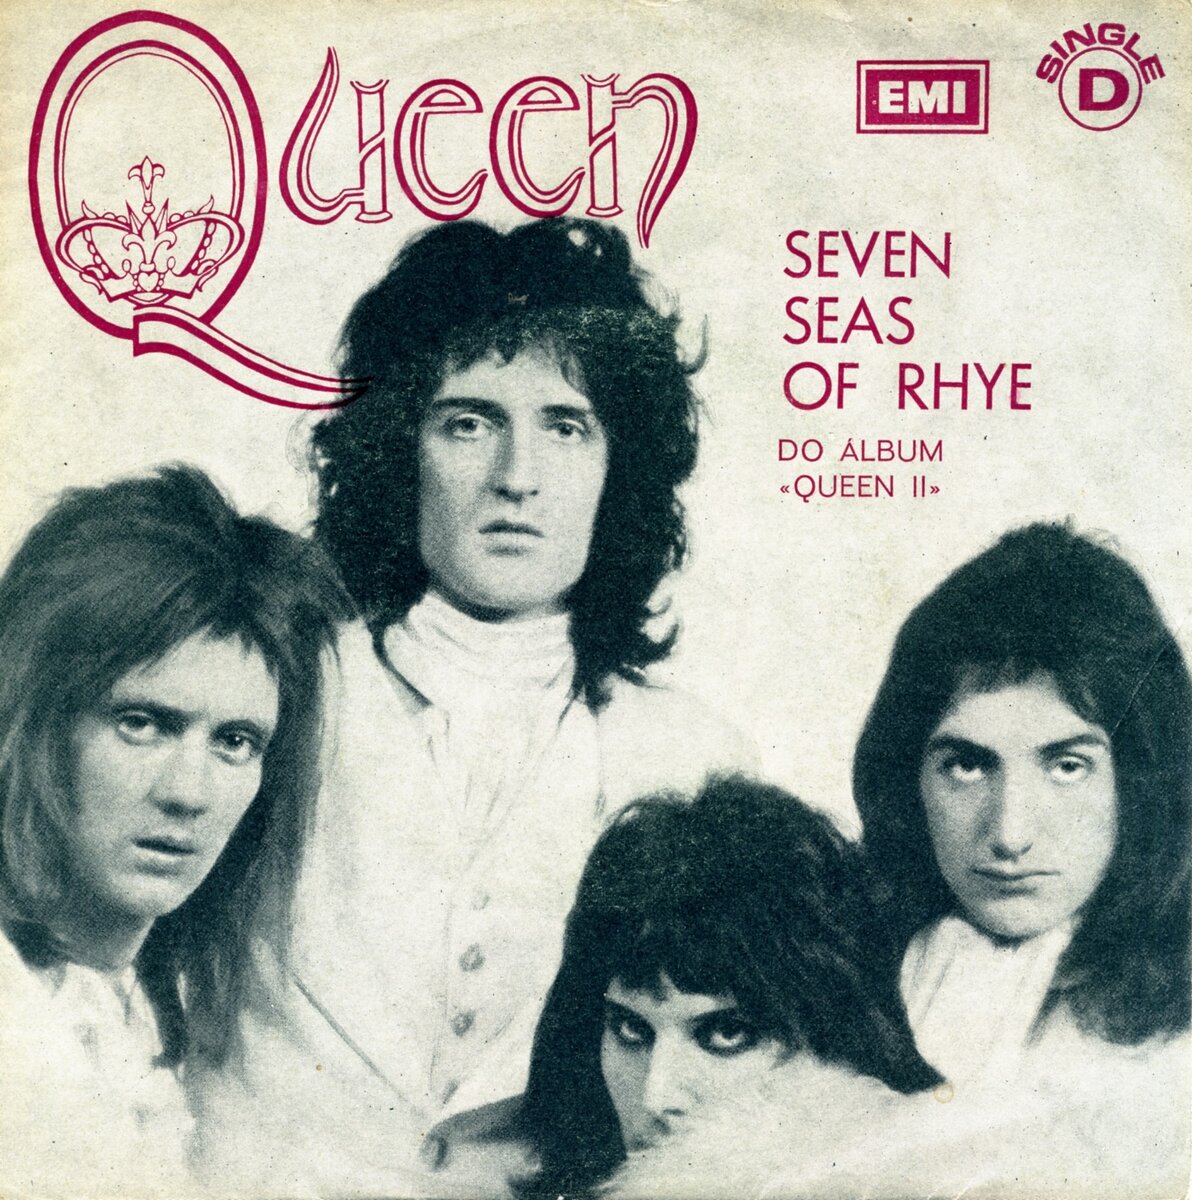 Обложка португальского сингла "Seven Seas Of Rhye" британской рок-группы Queen